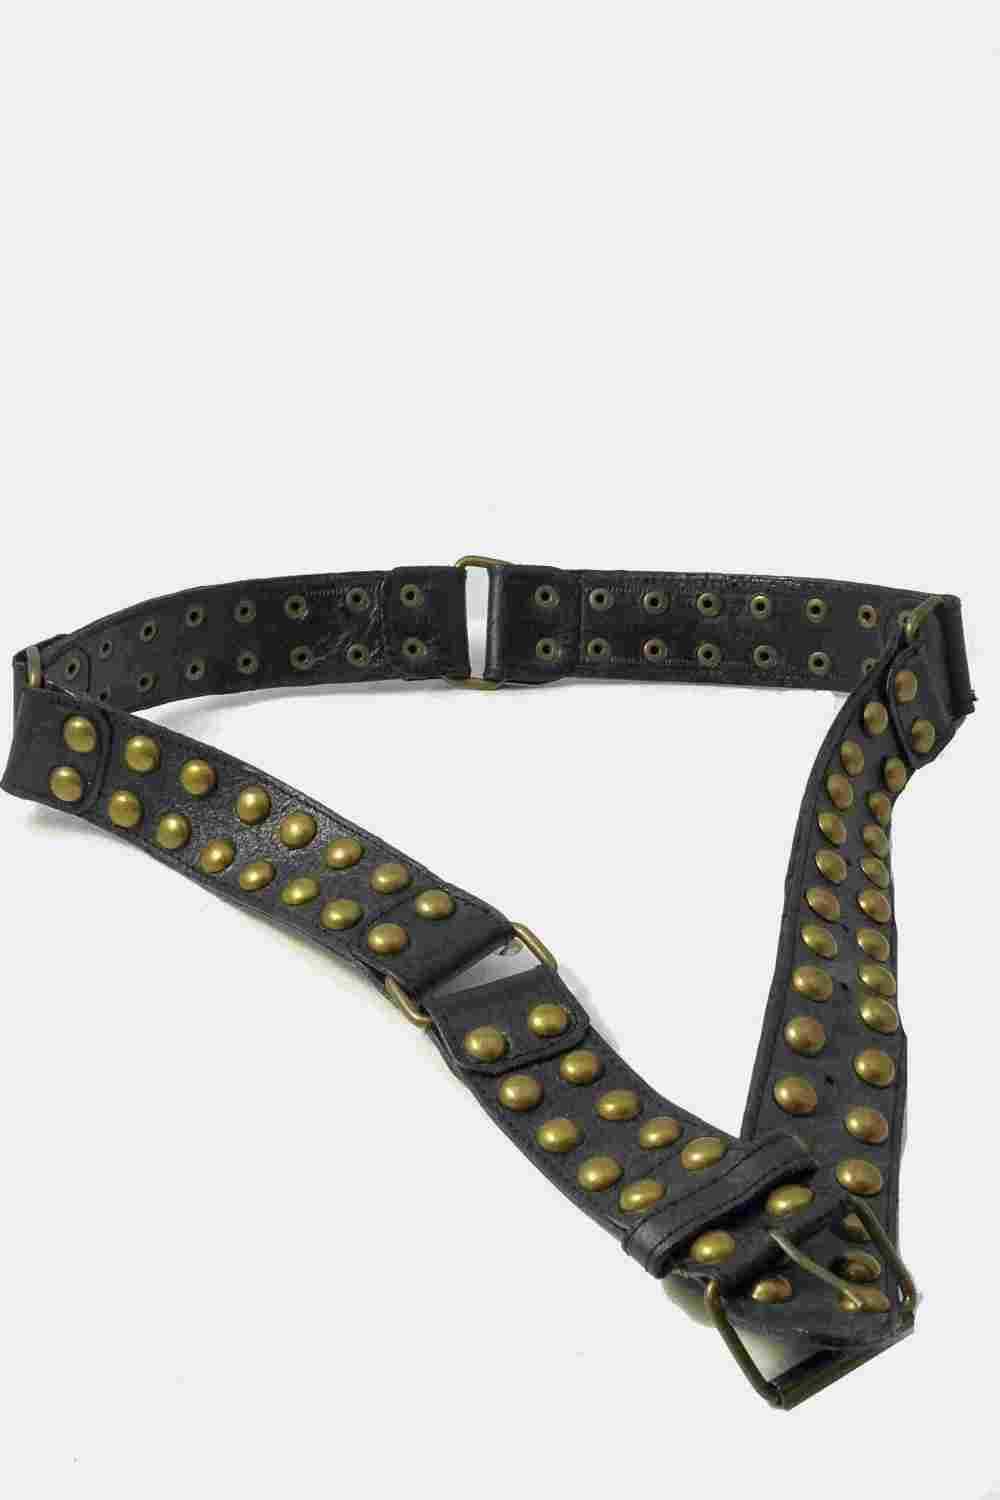 Gold Studded Black Leather Belt